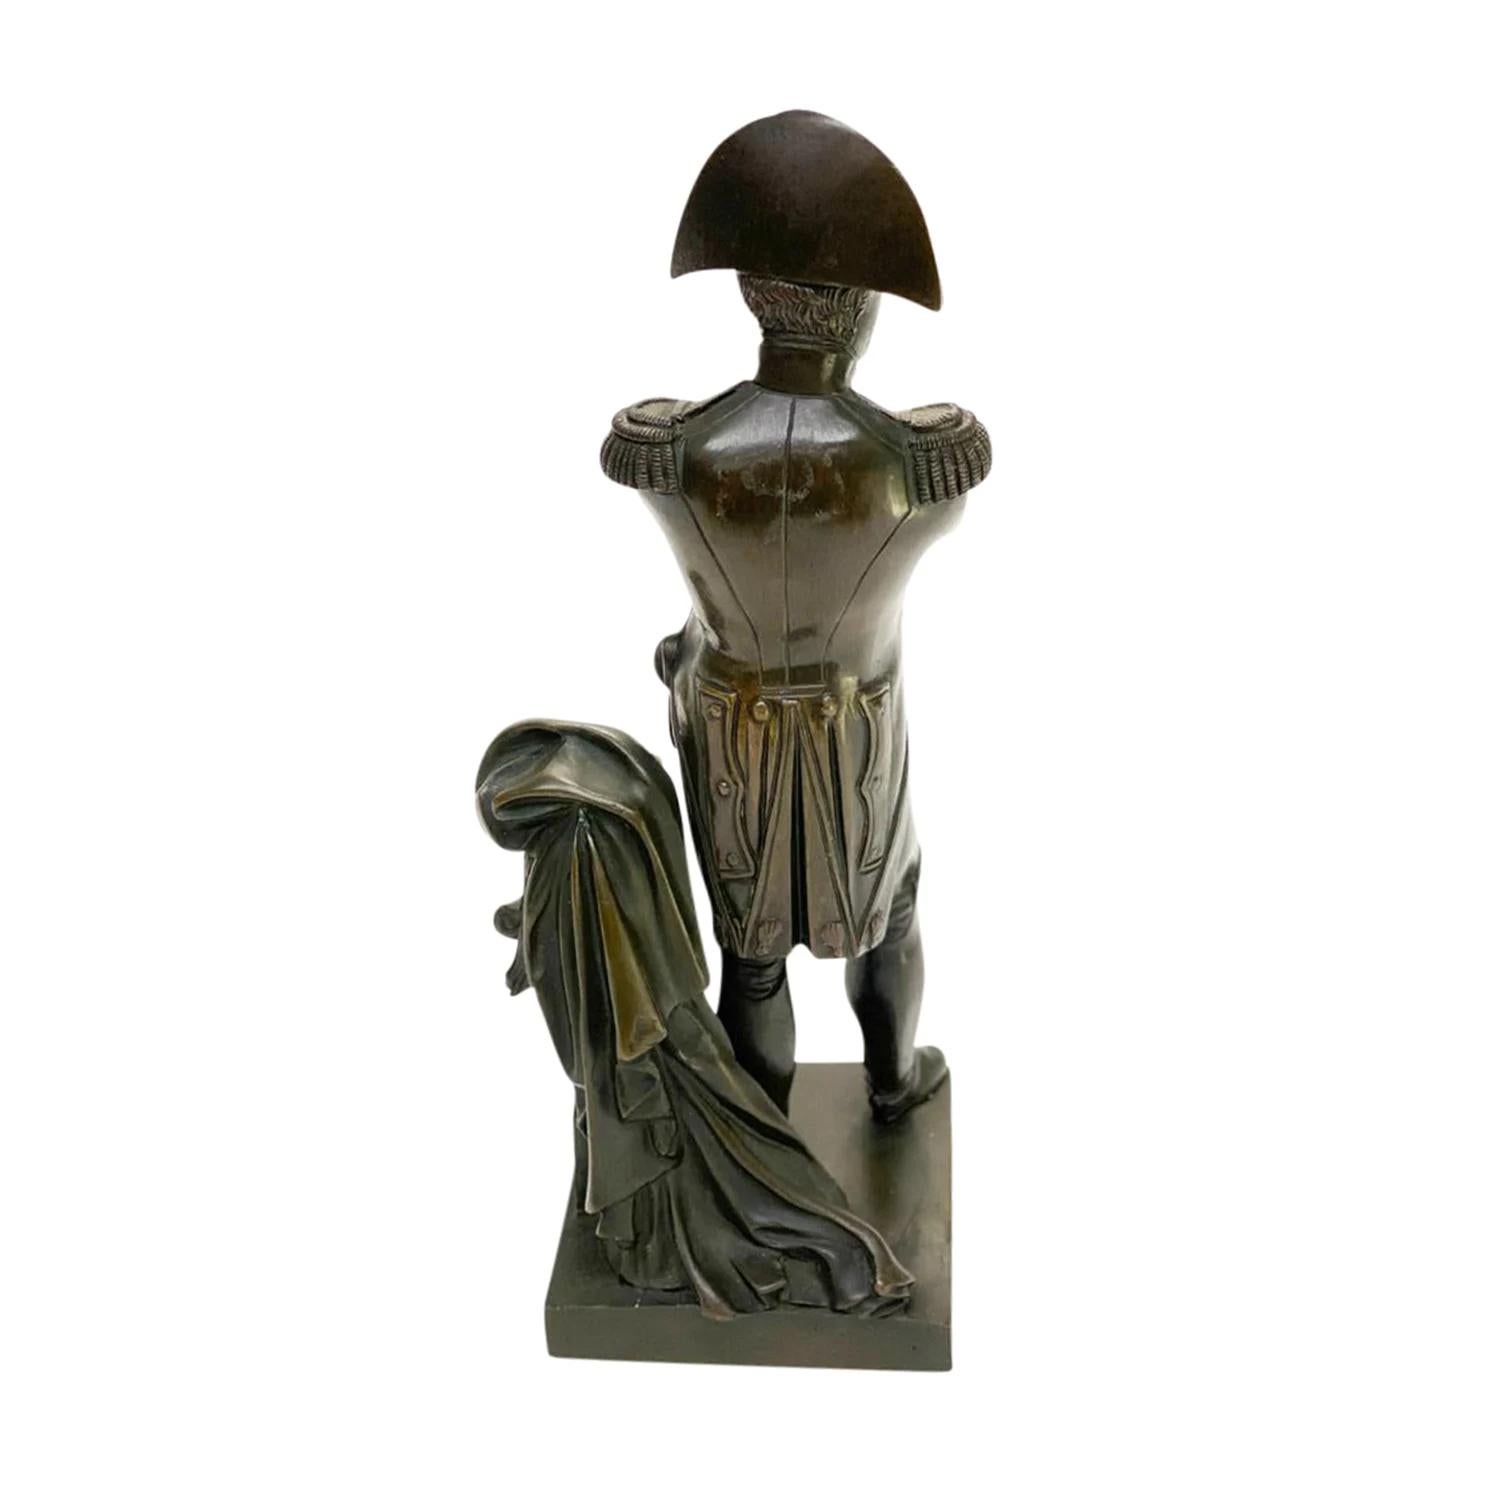 Escultura de Bronce Patinado Napoleón Bonaparte Vintage Francés del Siglo XIX Imperio